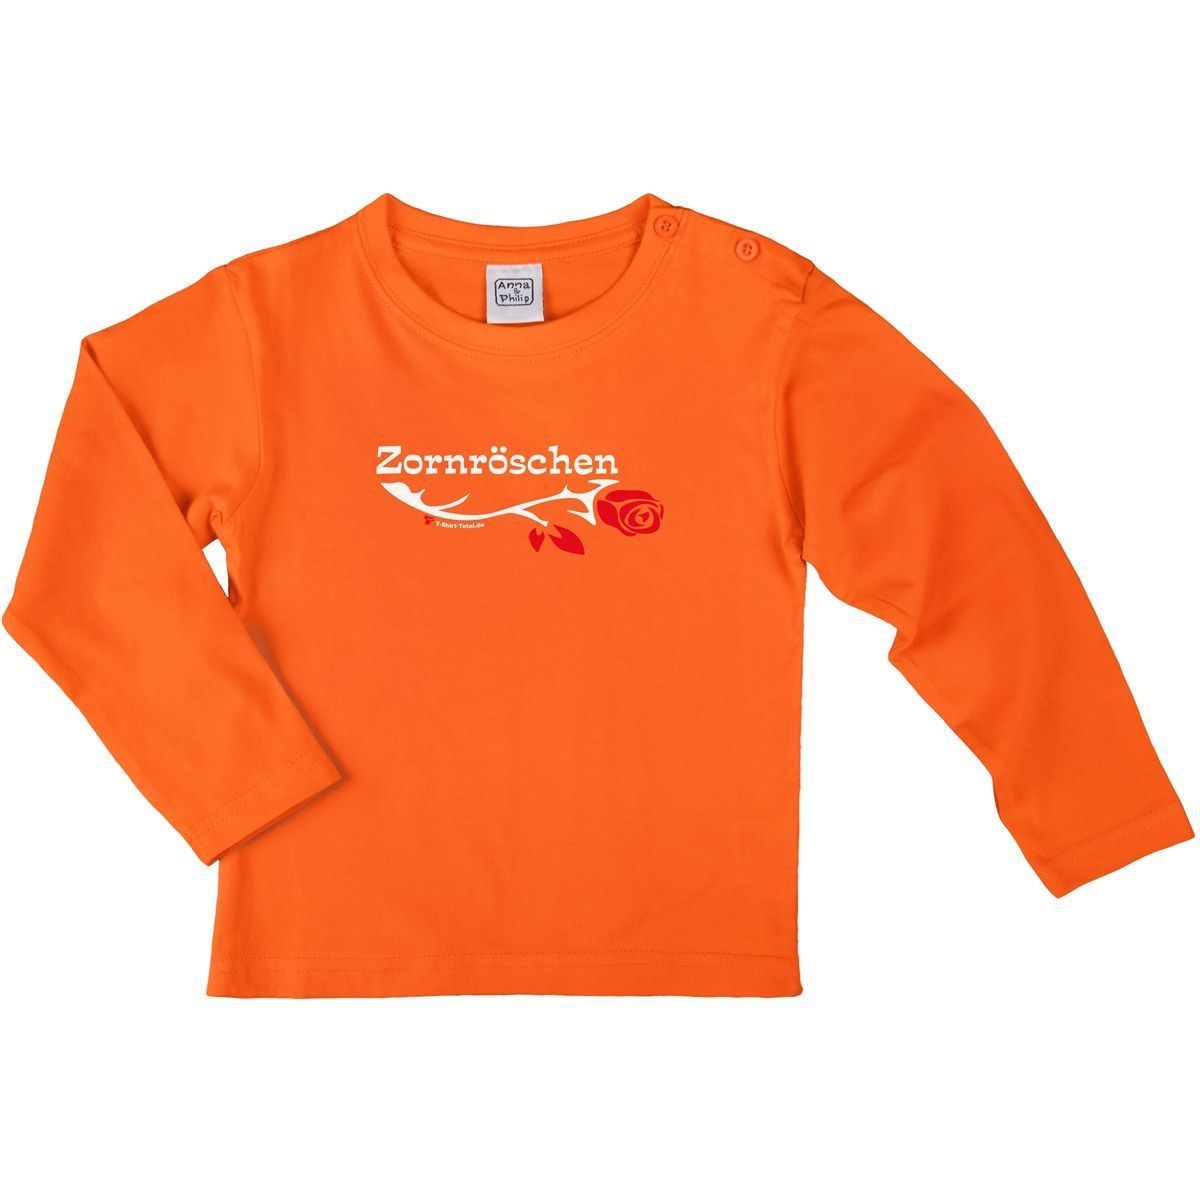 Zornröschen Kinder Langarm Shirt orange 56 / 62